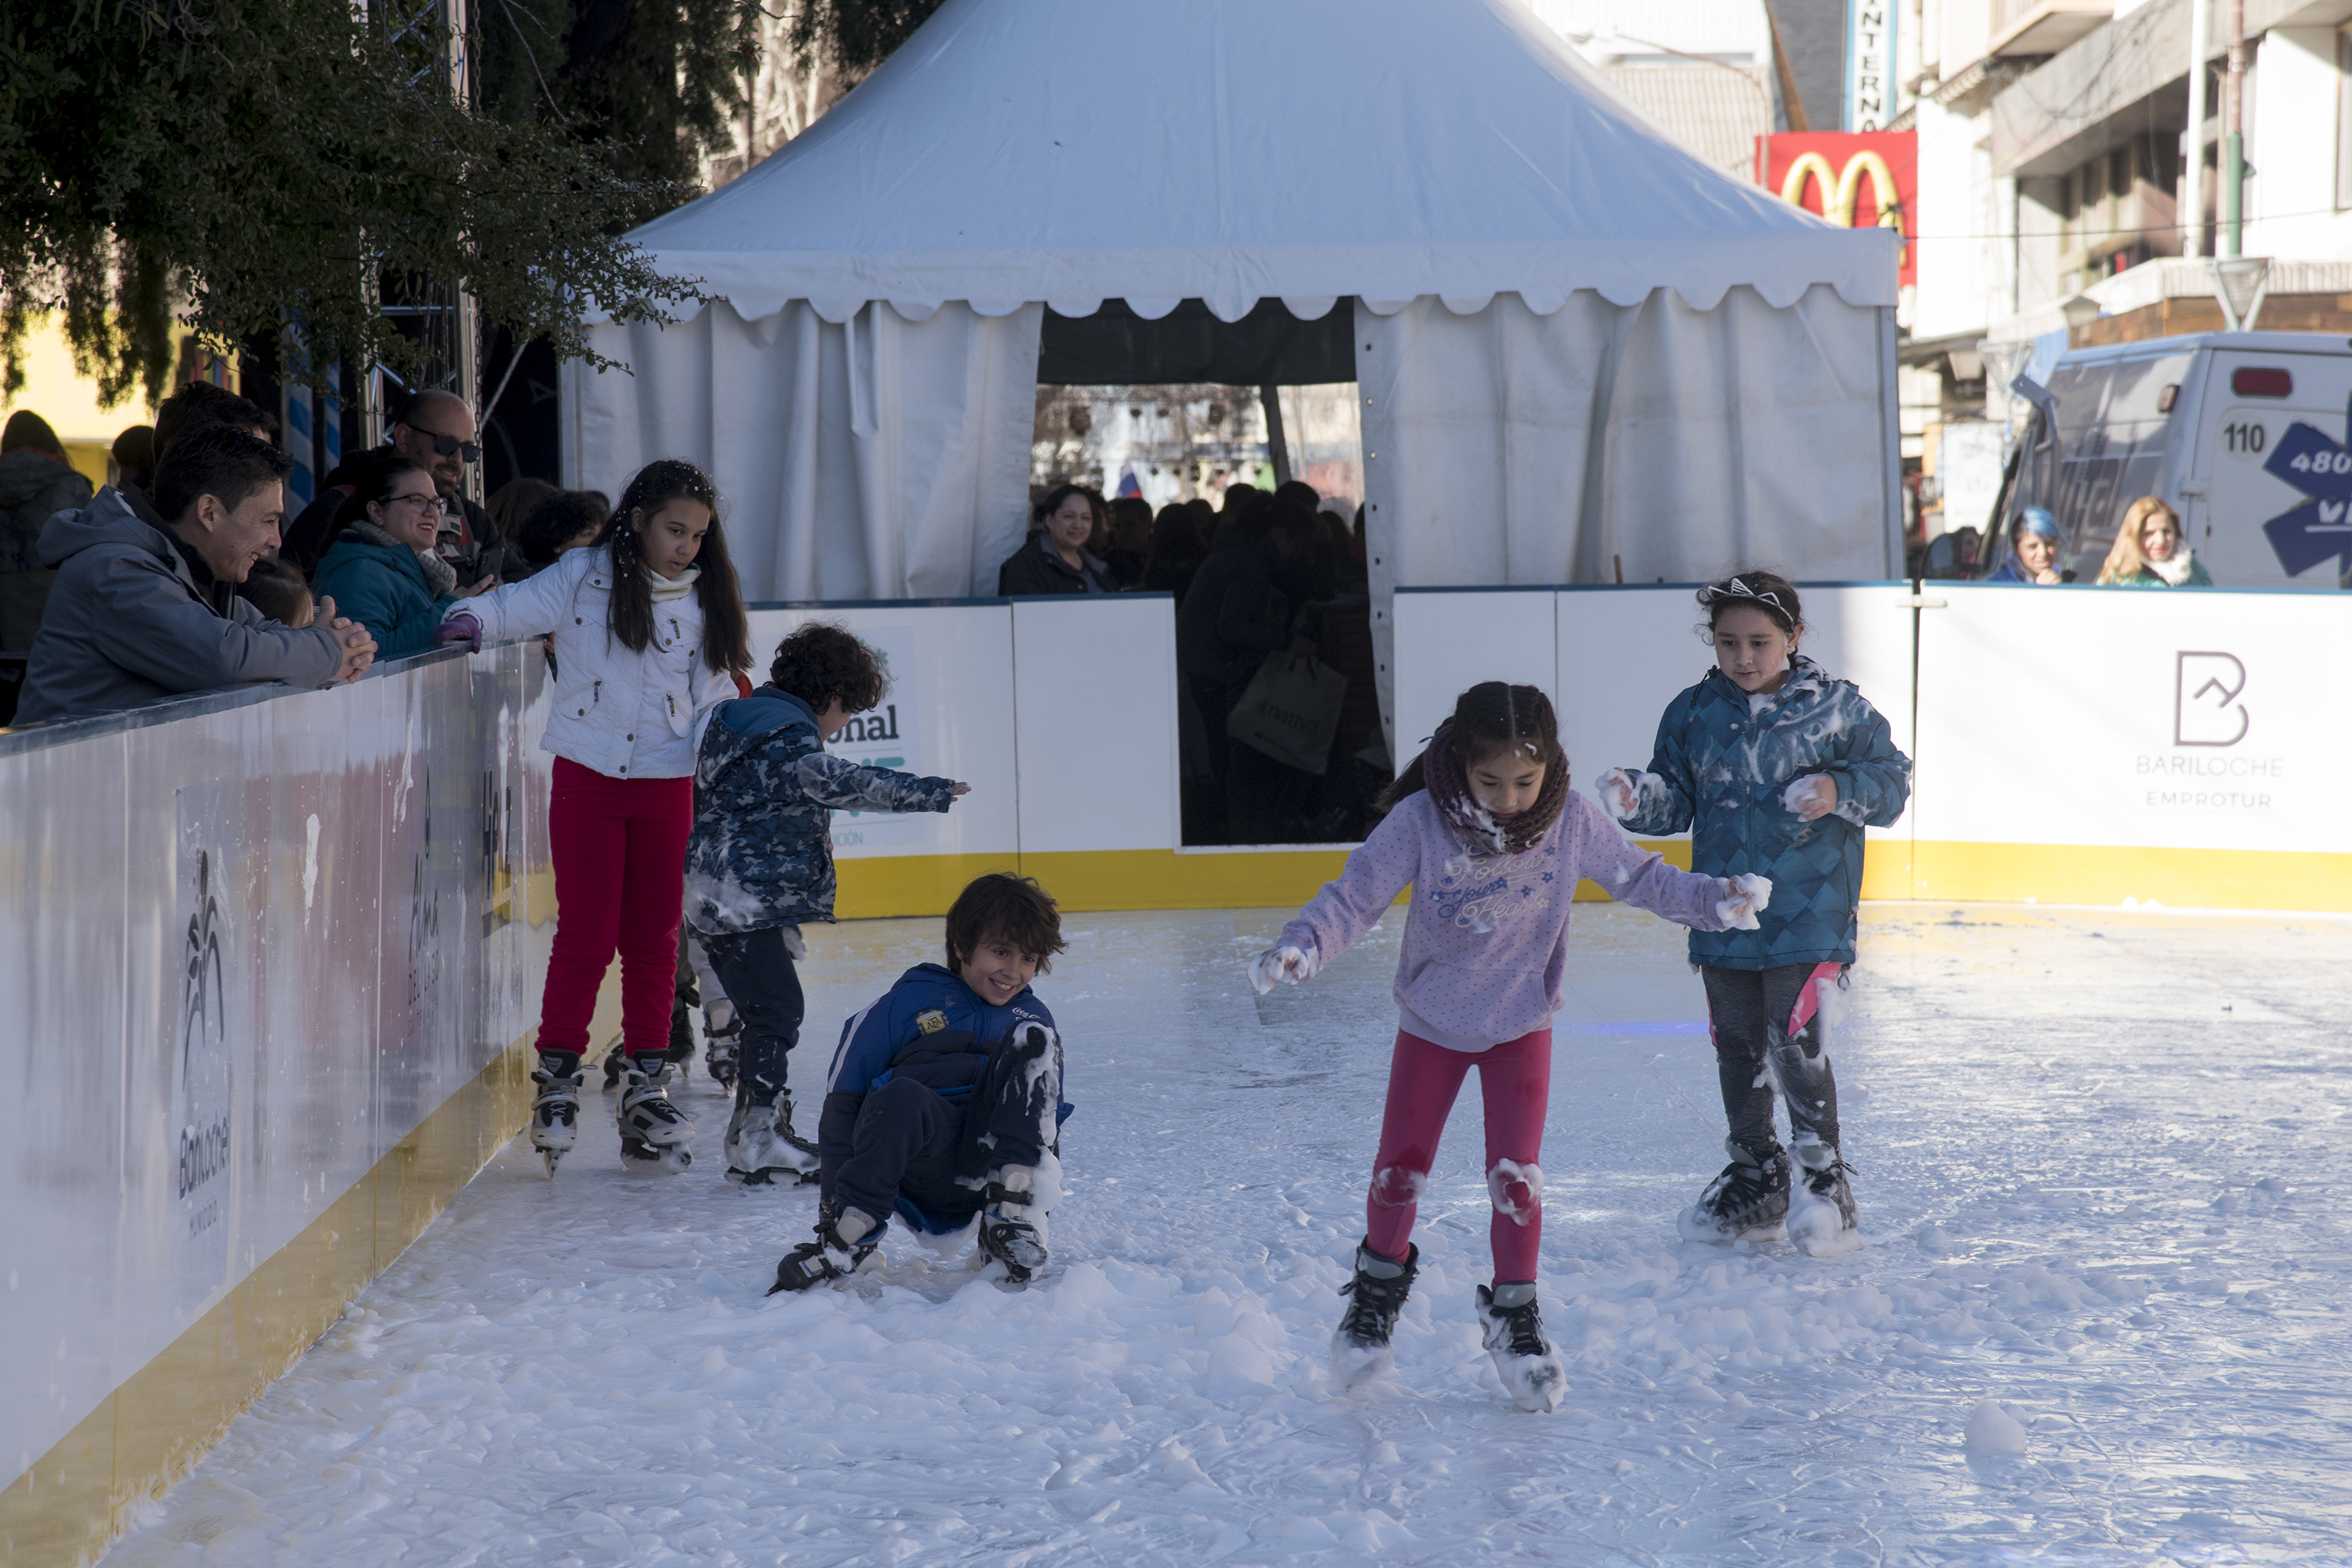 La pista de patinaje, para chicos de 5 a 12 años. Foto: Marcelo Martinez